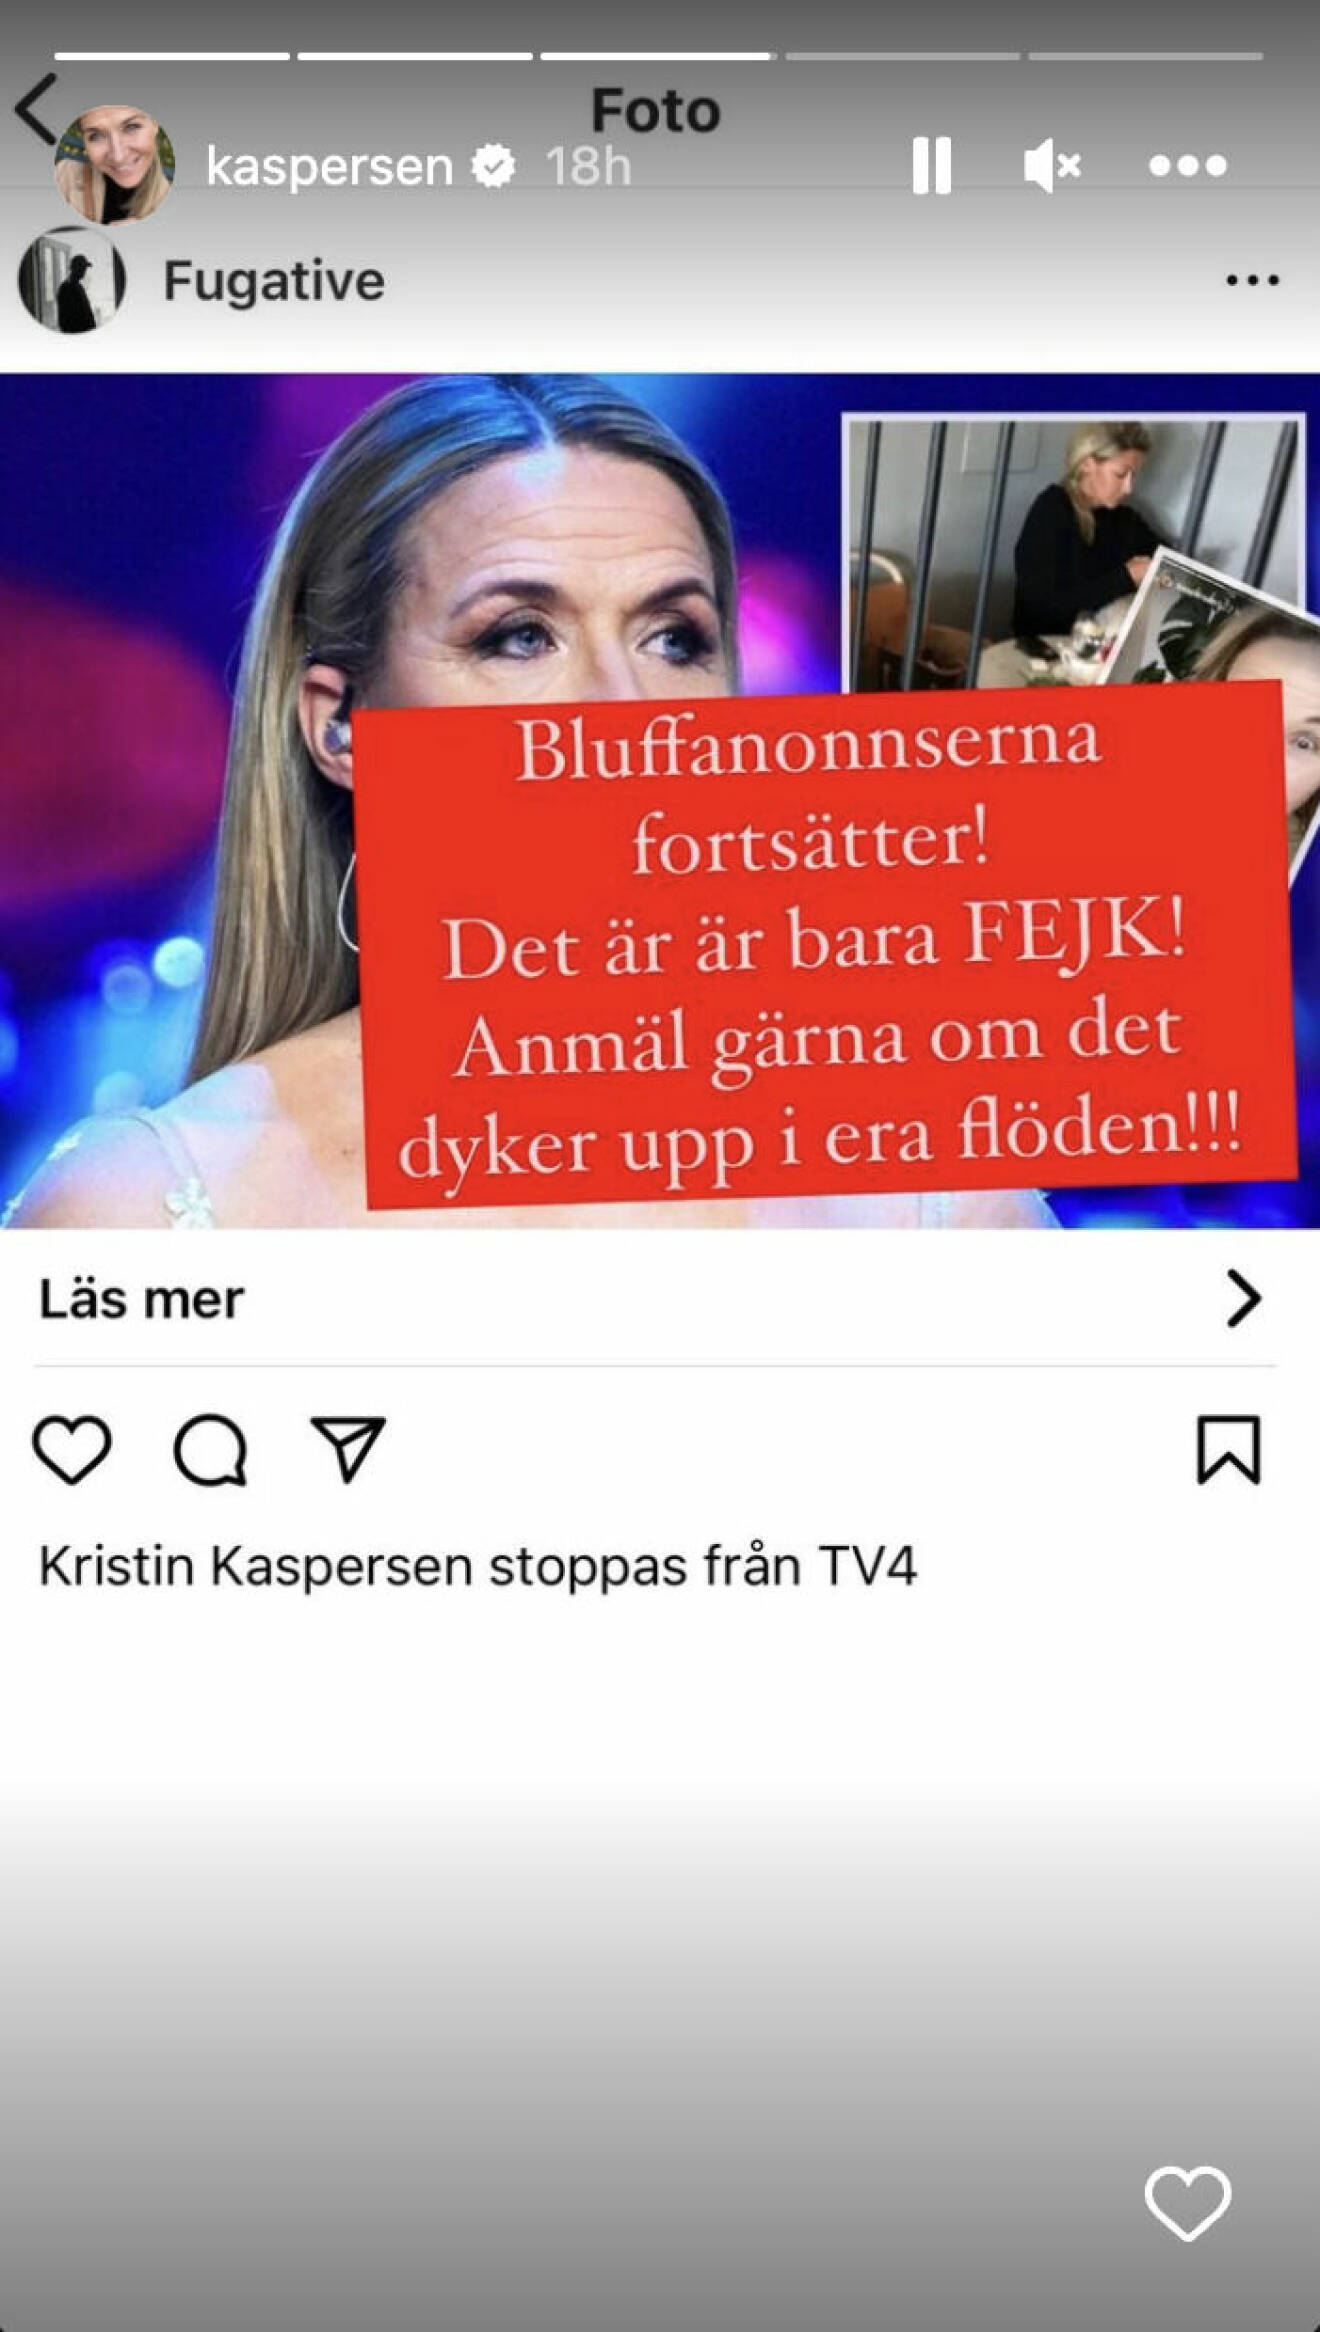 Kristin Kaspersen visar en bluffannons på Instagram